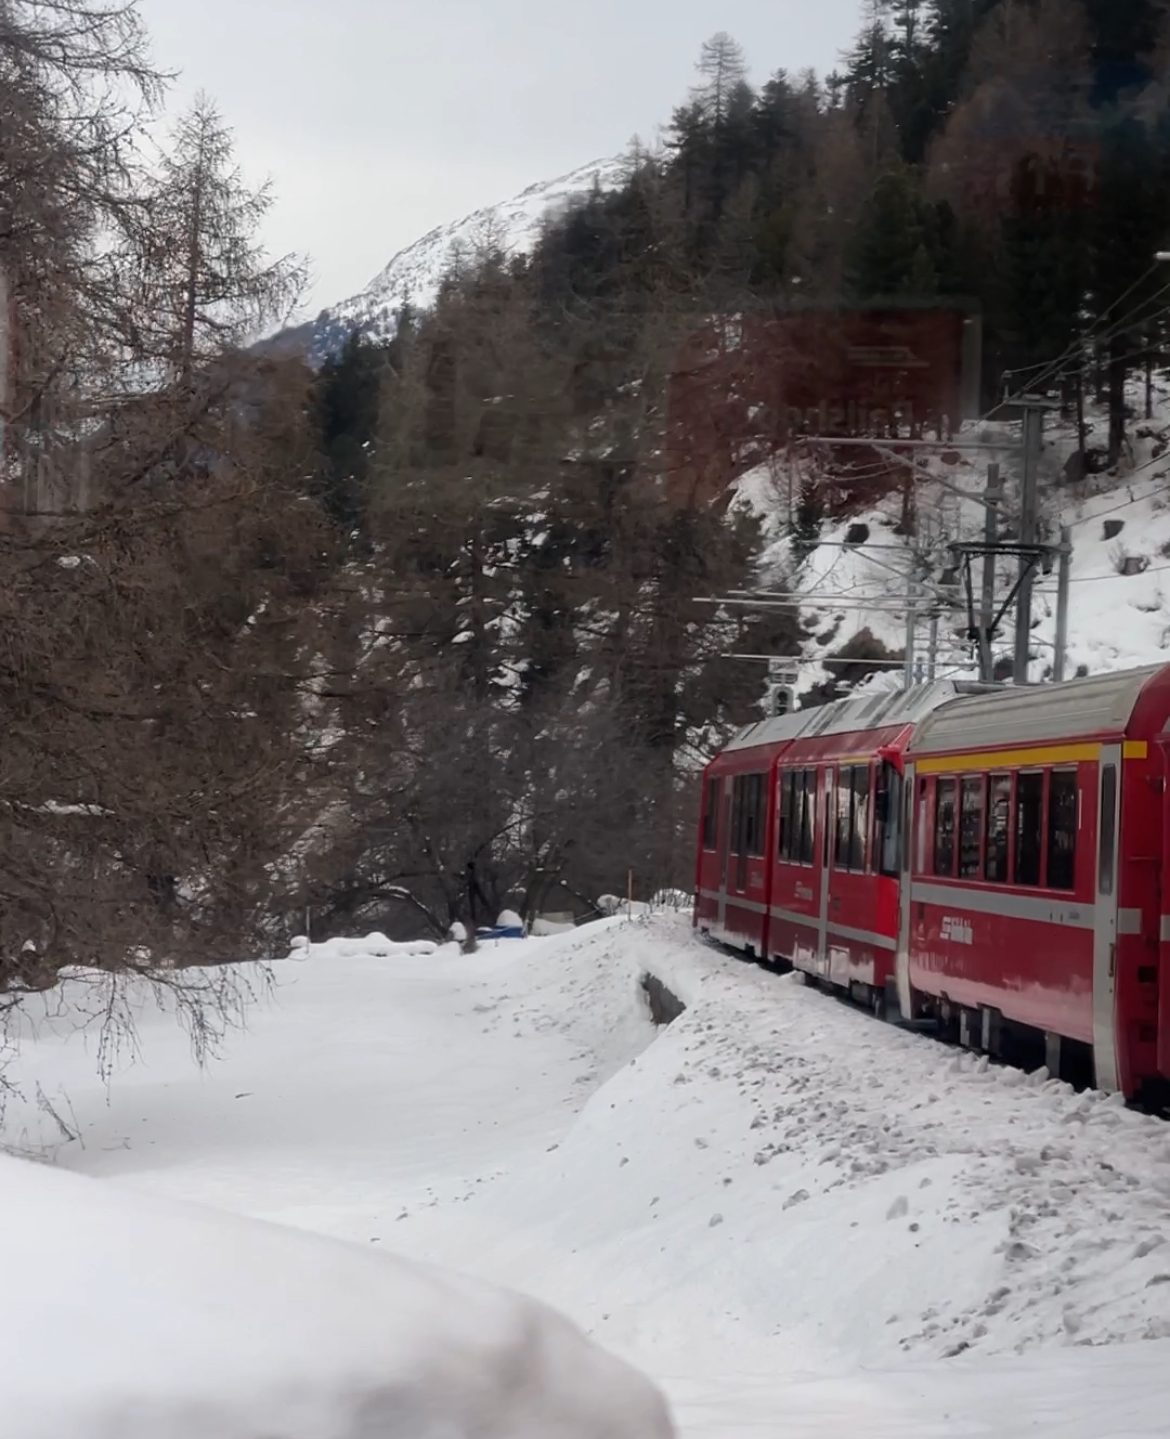 How often does the Bernina Express run?